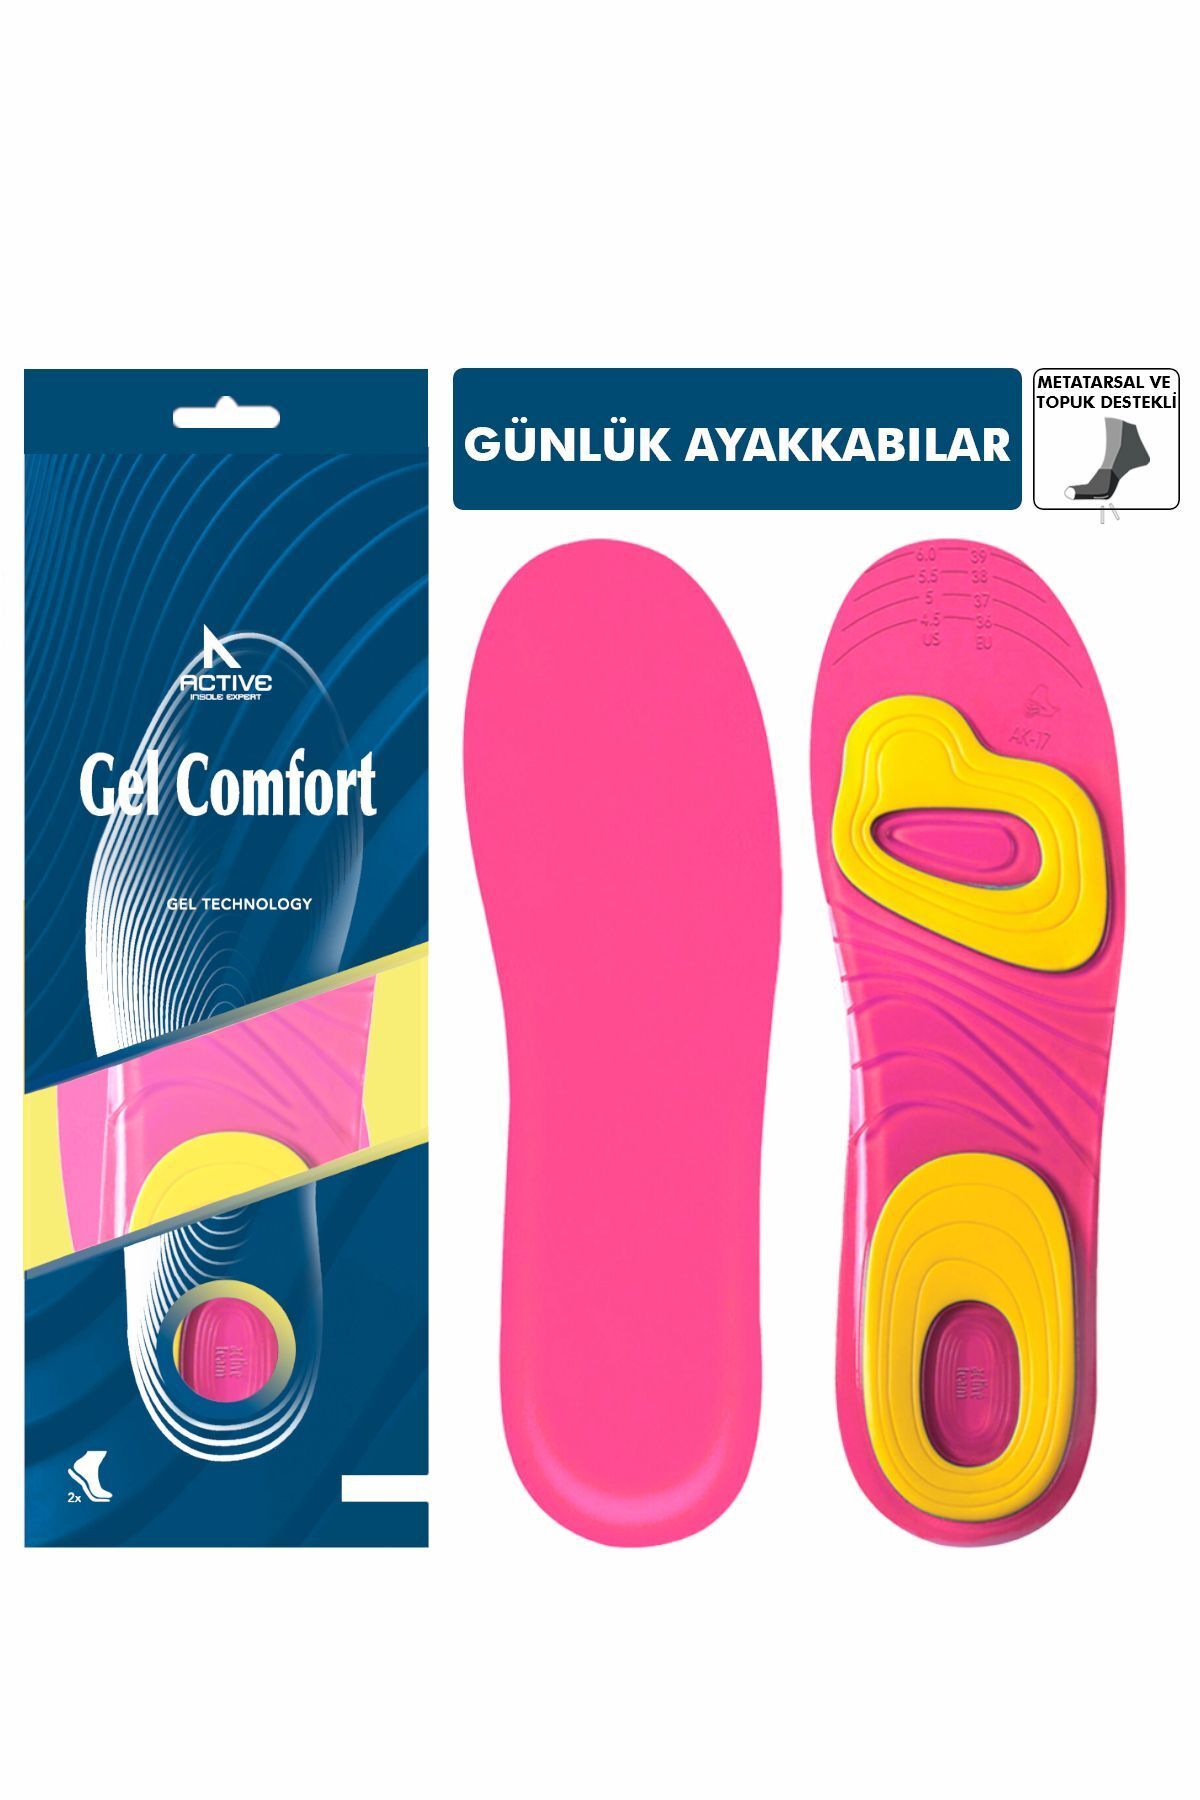 Gel Comfort - Topuk Ve Metatarsal Destekli Jel Ayakkabı Tabanlığı, Darbe Emici Günlük Iç Tabanlık